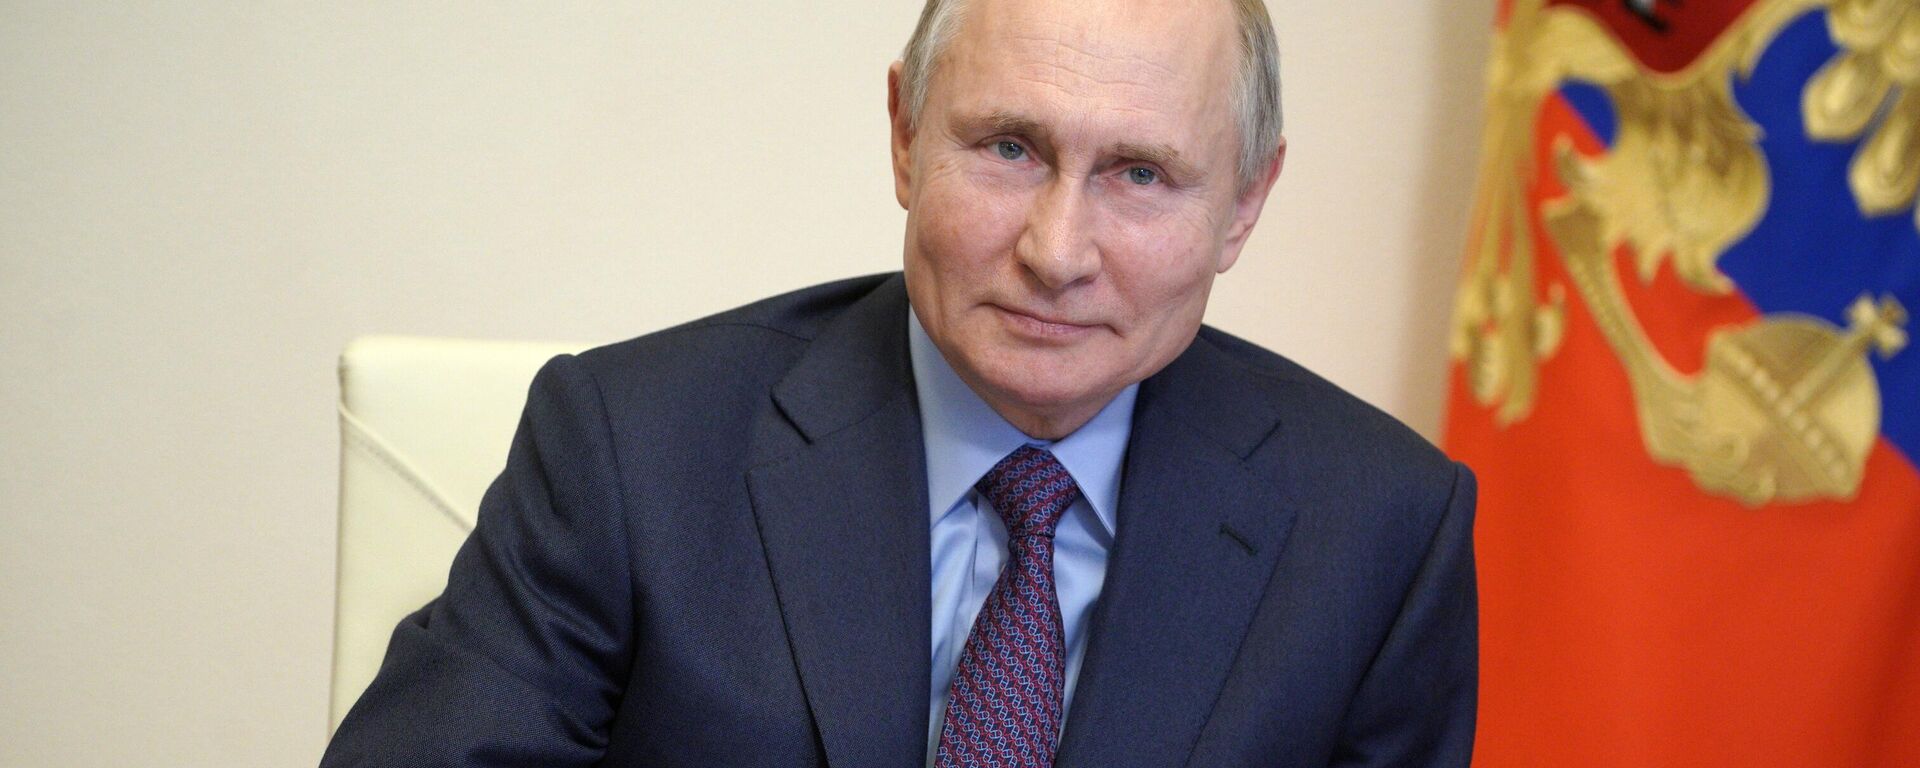 Президент РФ Владимир Путин  - Sputnik Узбекистан, 1920, 24.03.2021